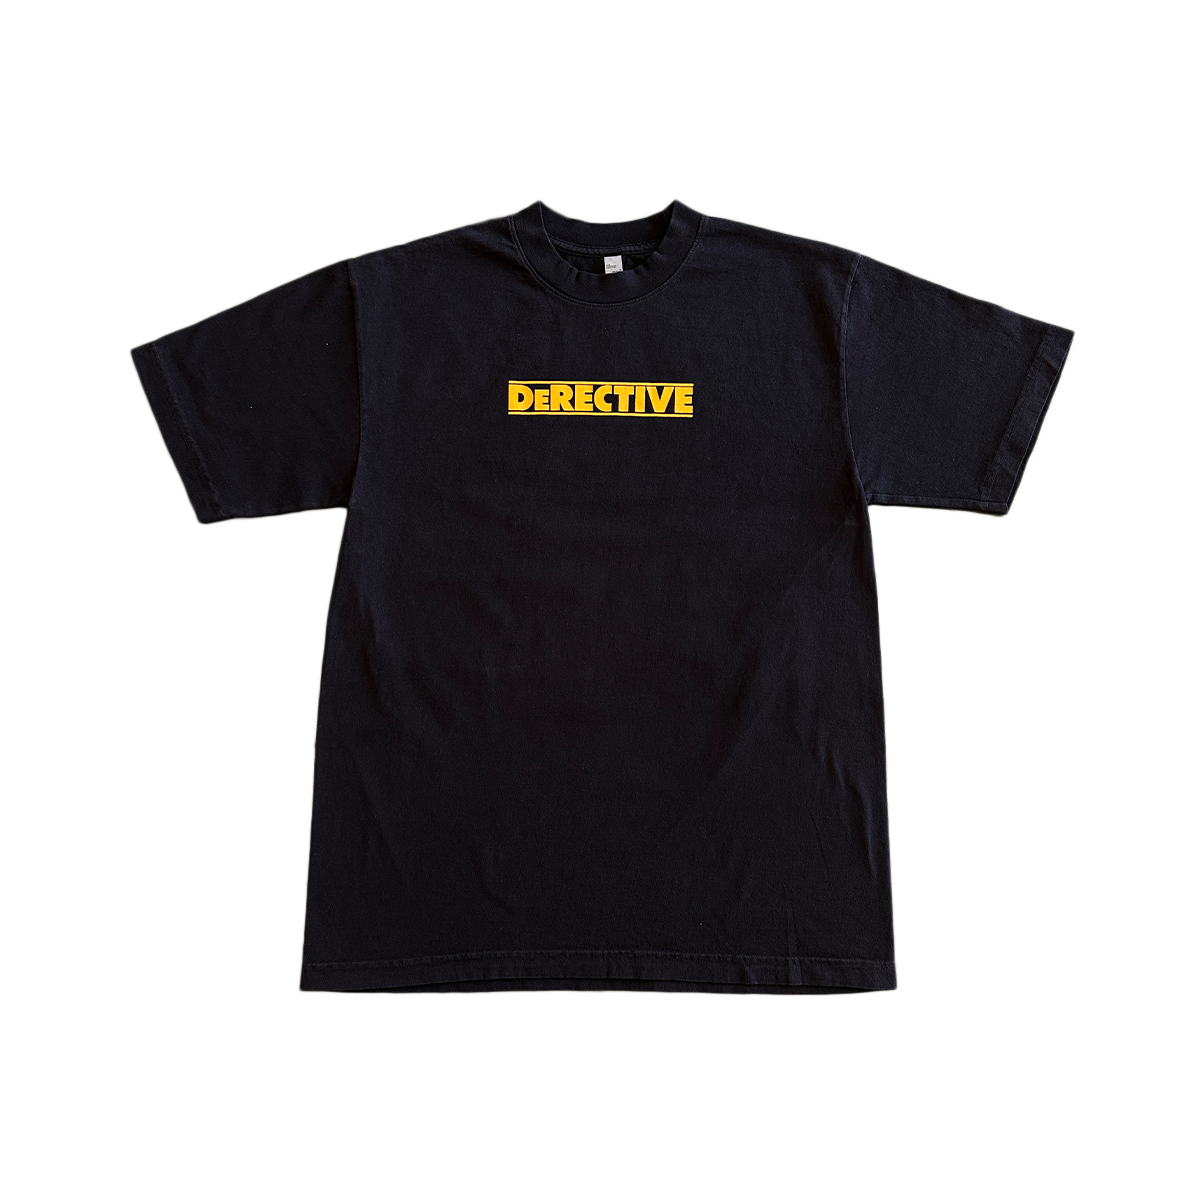 DeRECTIVE T-Shirt - Black